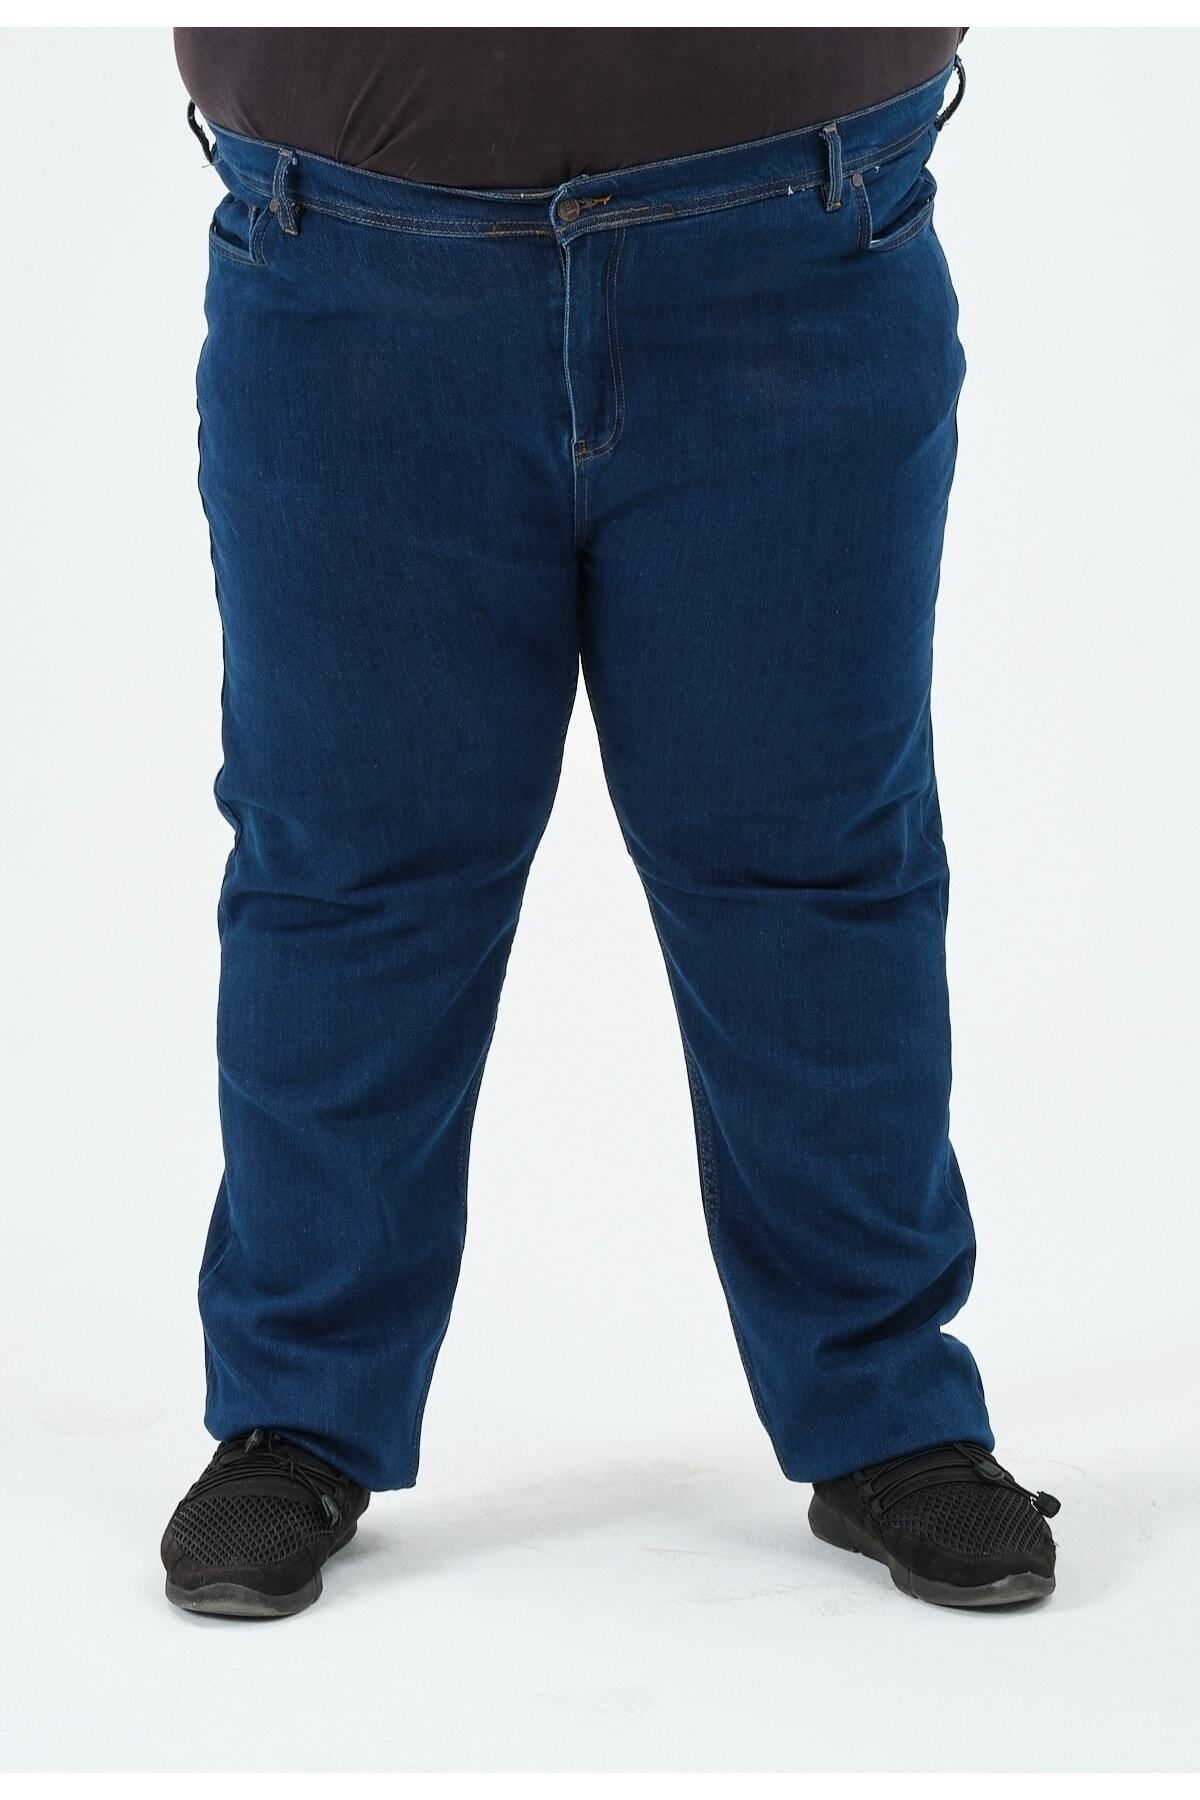 Denim Süper Battal Büyük Beden Erkek Kot Pantolon Likralı Battal 1501 Koyu Mavi